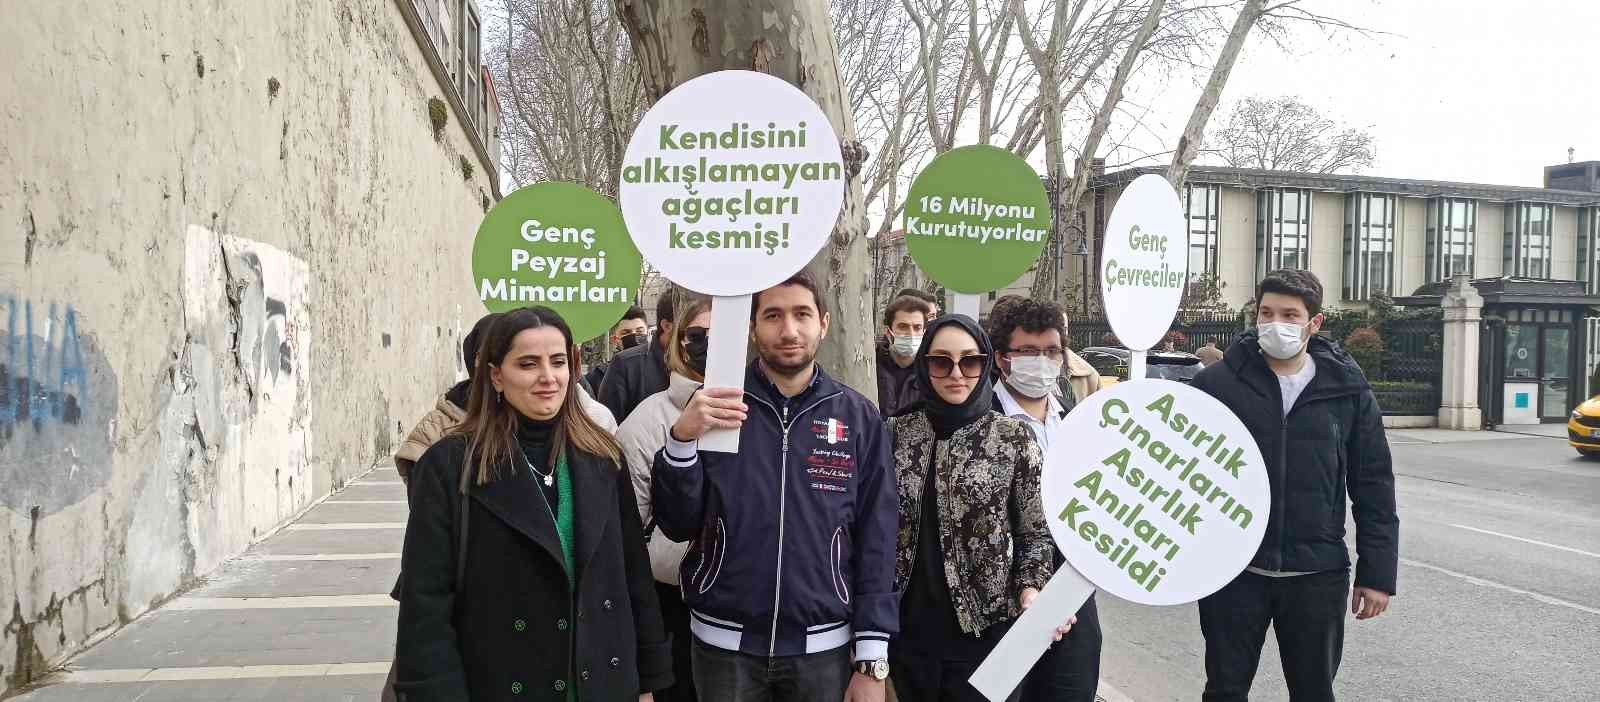 Beşiktaş’ta 112 çınar ağacının İstanbul Büyükşehir Belediyesi (İBB) tarafından kesilmesi üzerine Mimari ve Şehircilik Platformu tarafından ...